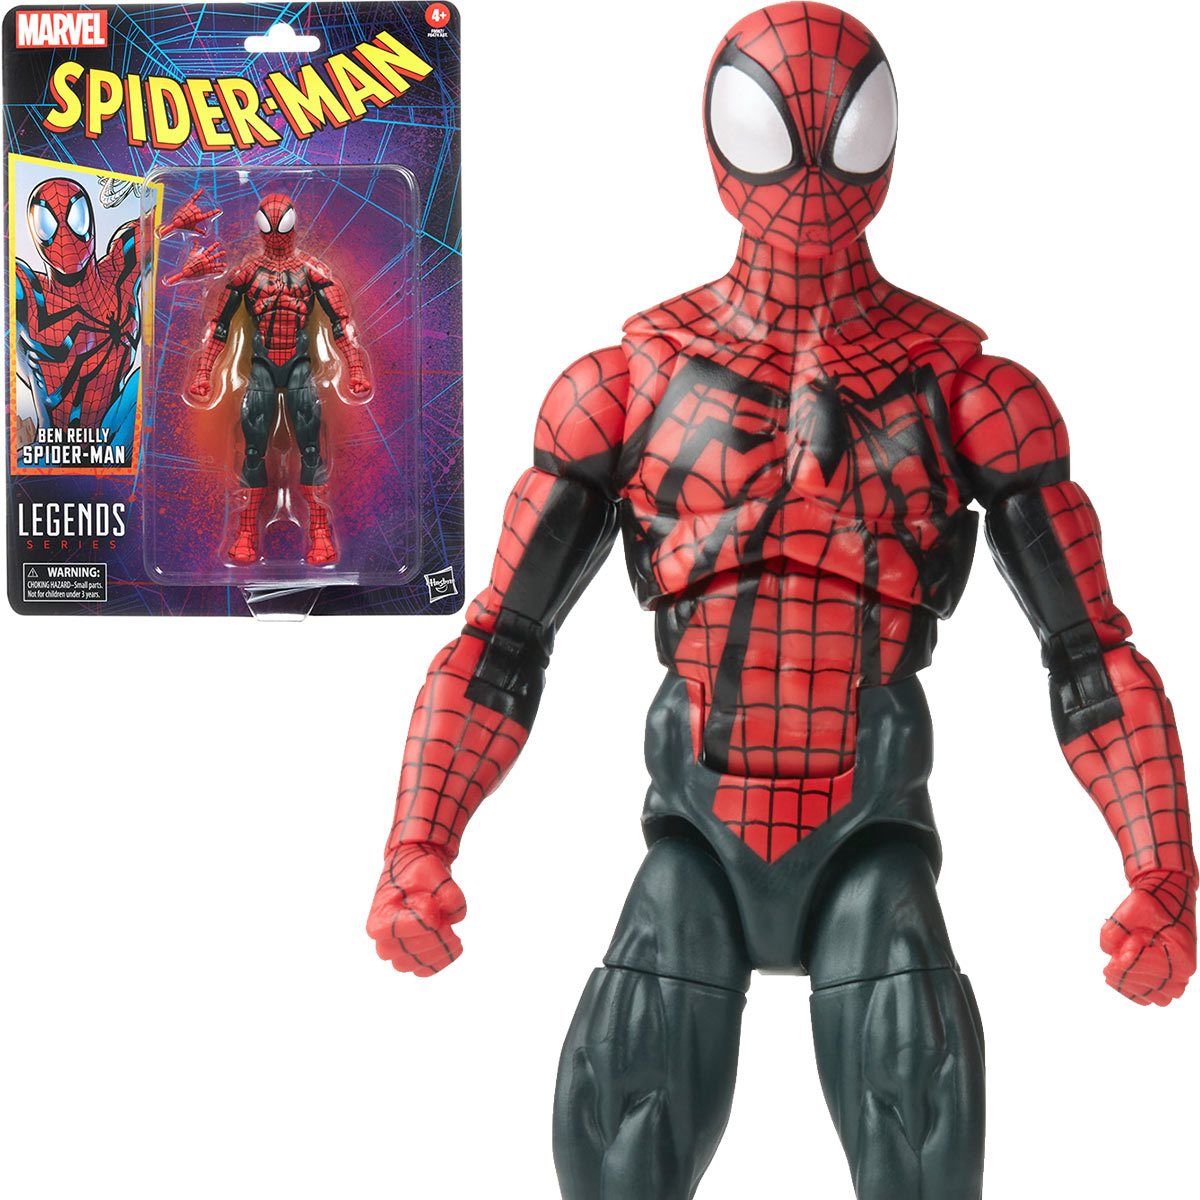 Spider-Man Retro Marvel Legends Ben Reilly Spider-Man 6-Inch